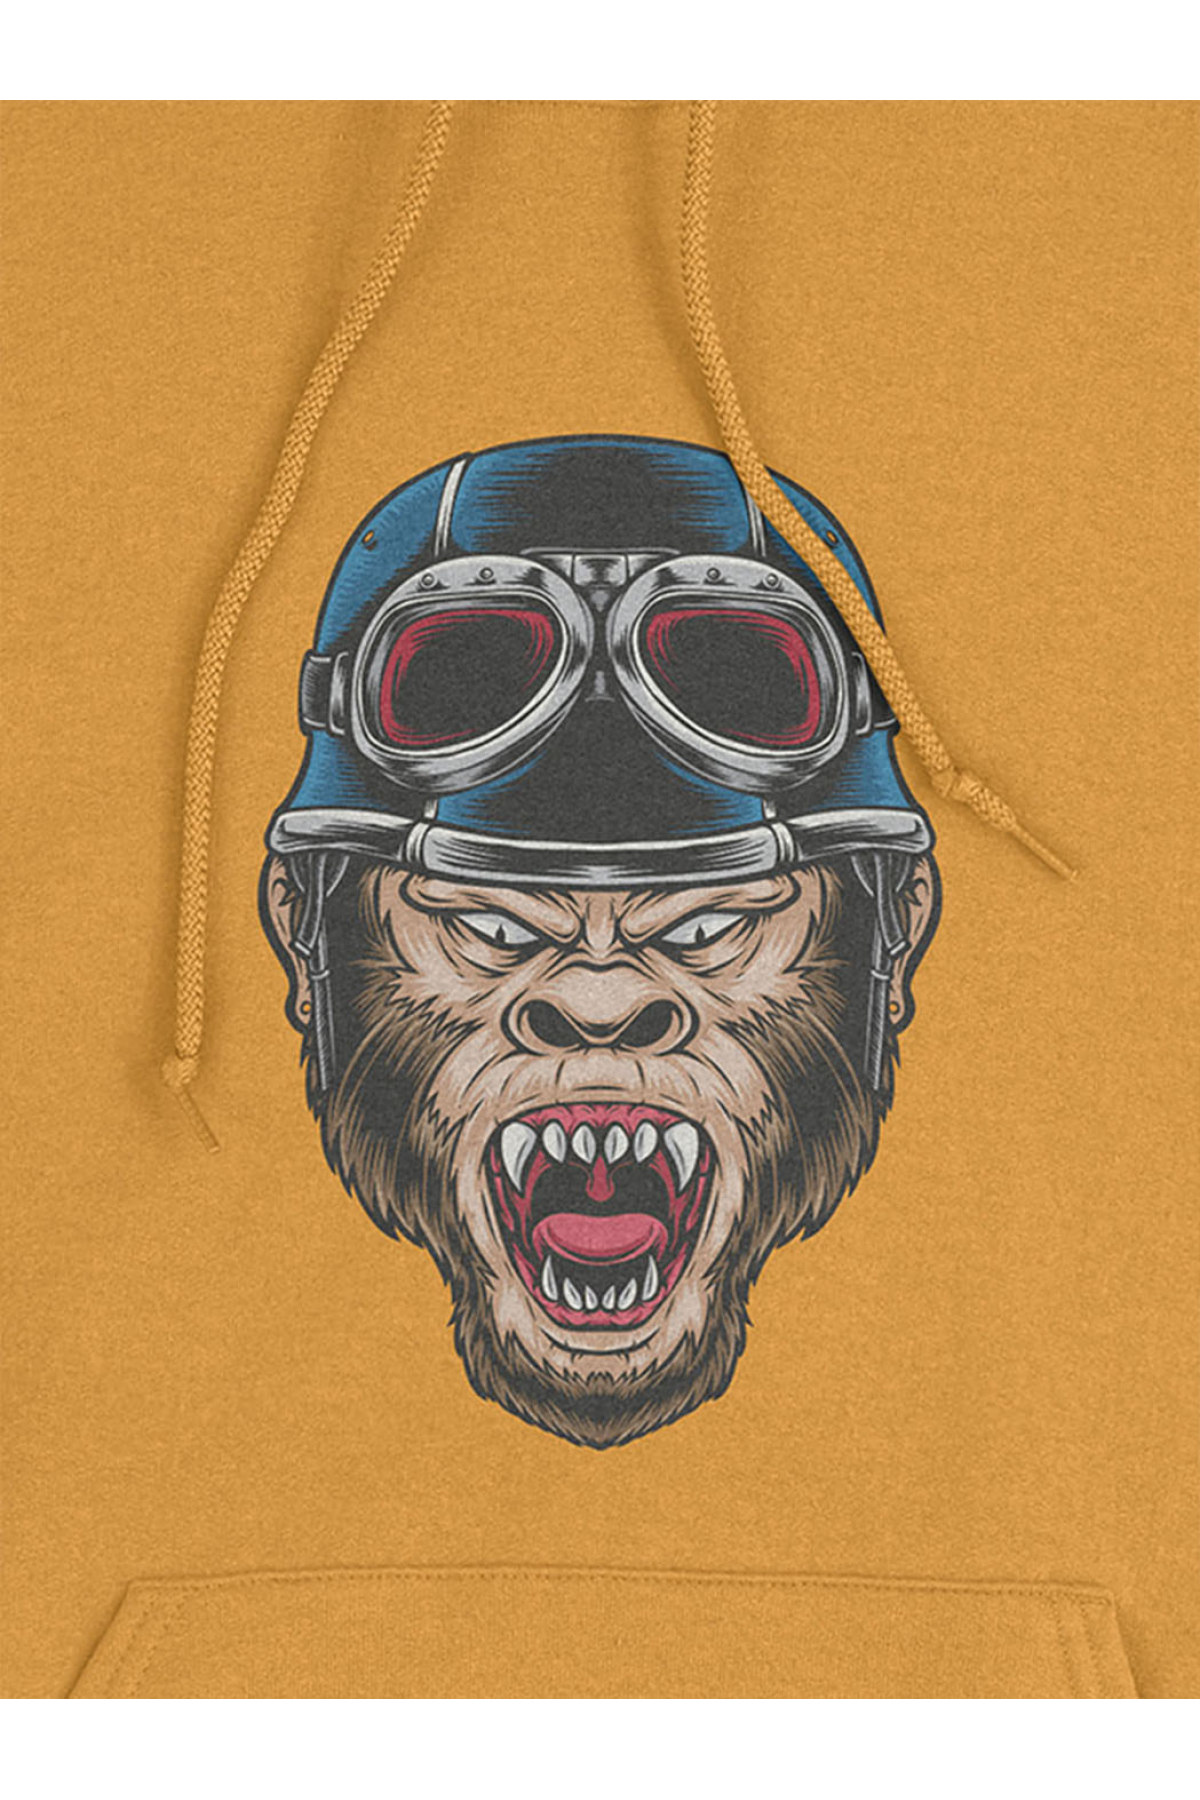 MIJUSTORE Kızgın Maymun Baskılı 3 iplik Kalın Oversize Siyah Sweatshirt Hoodie